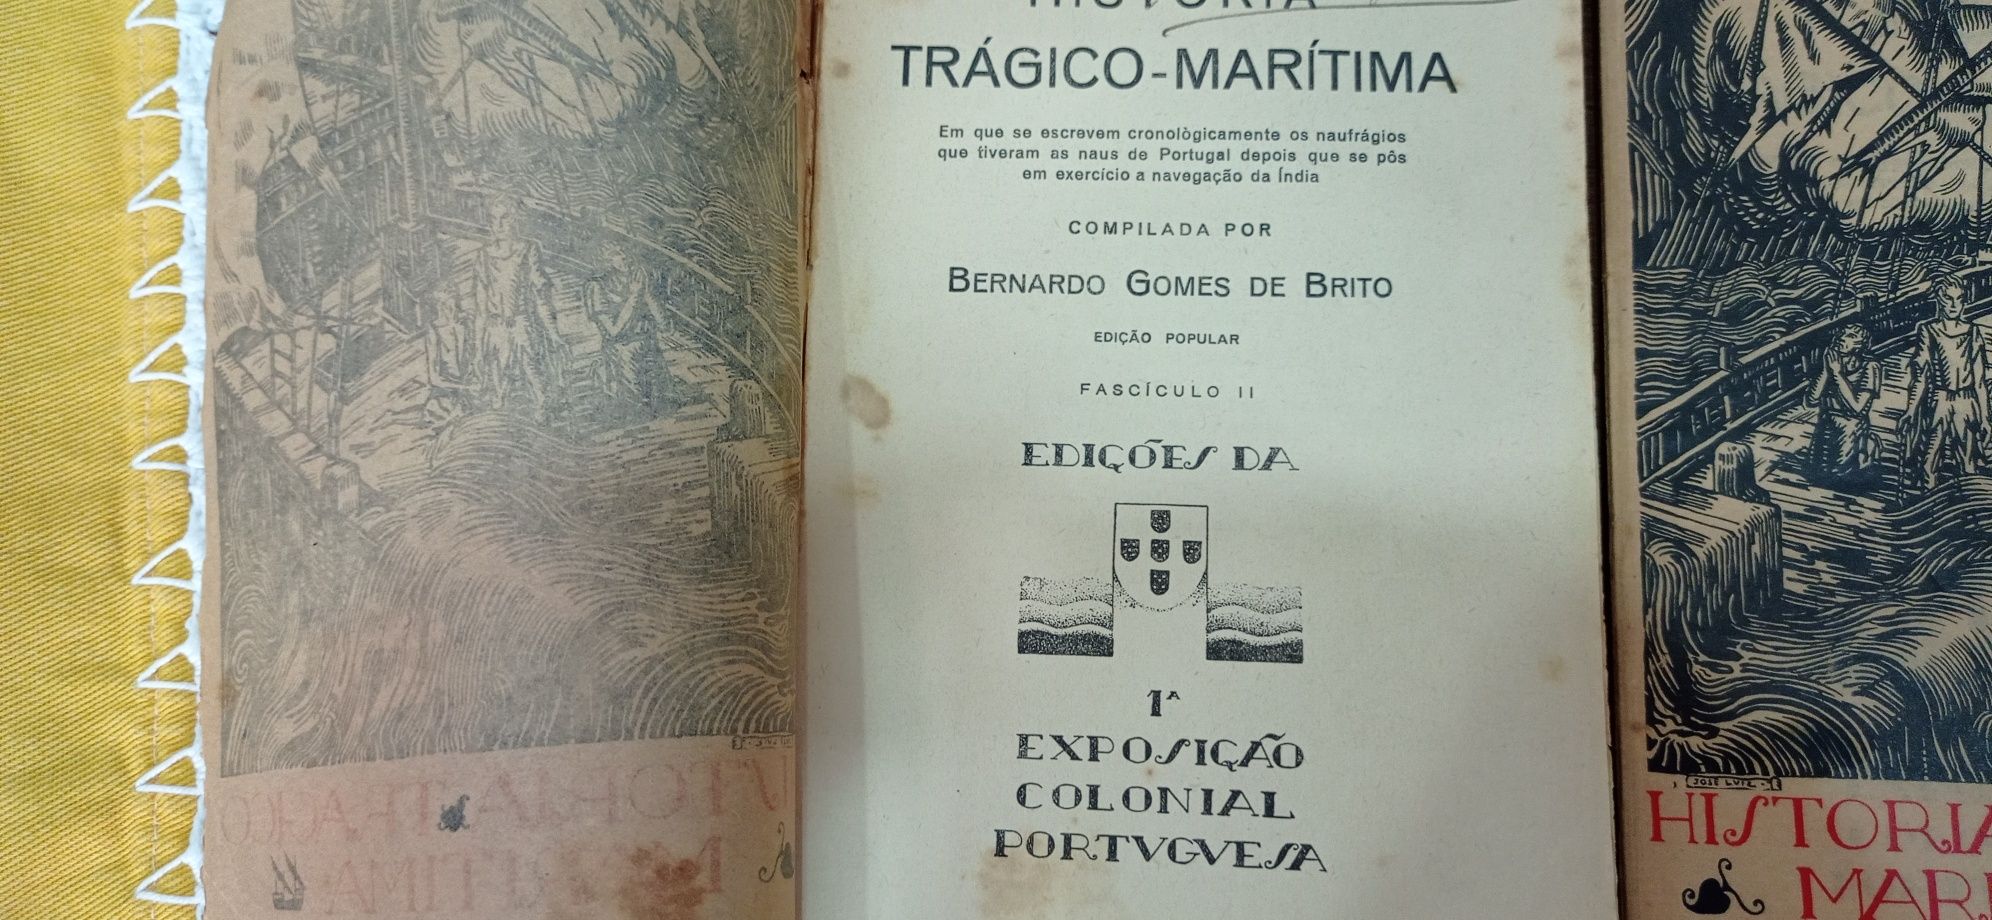 Livro antigo História trágico marítima de 1934